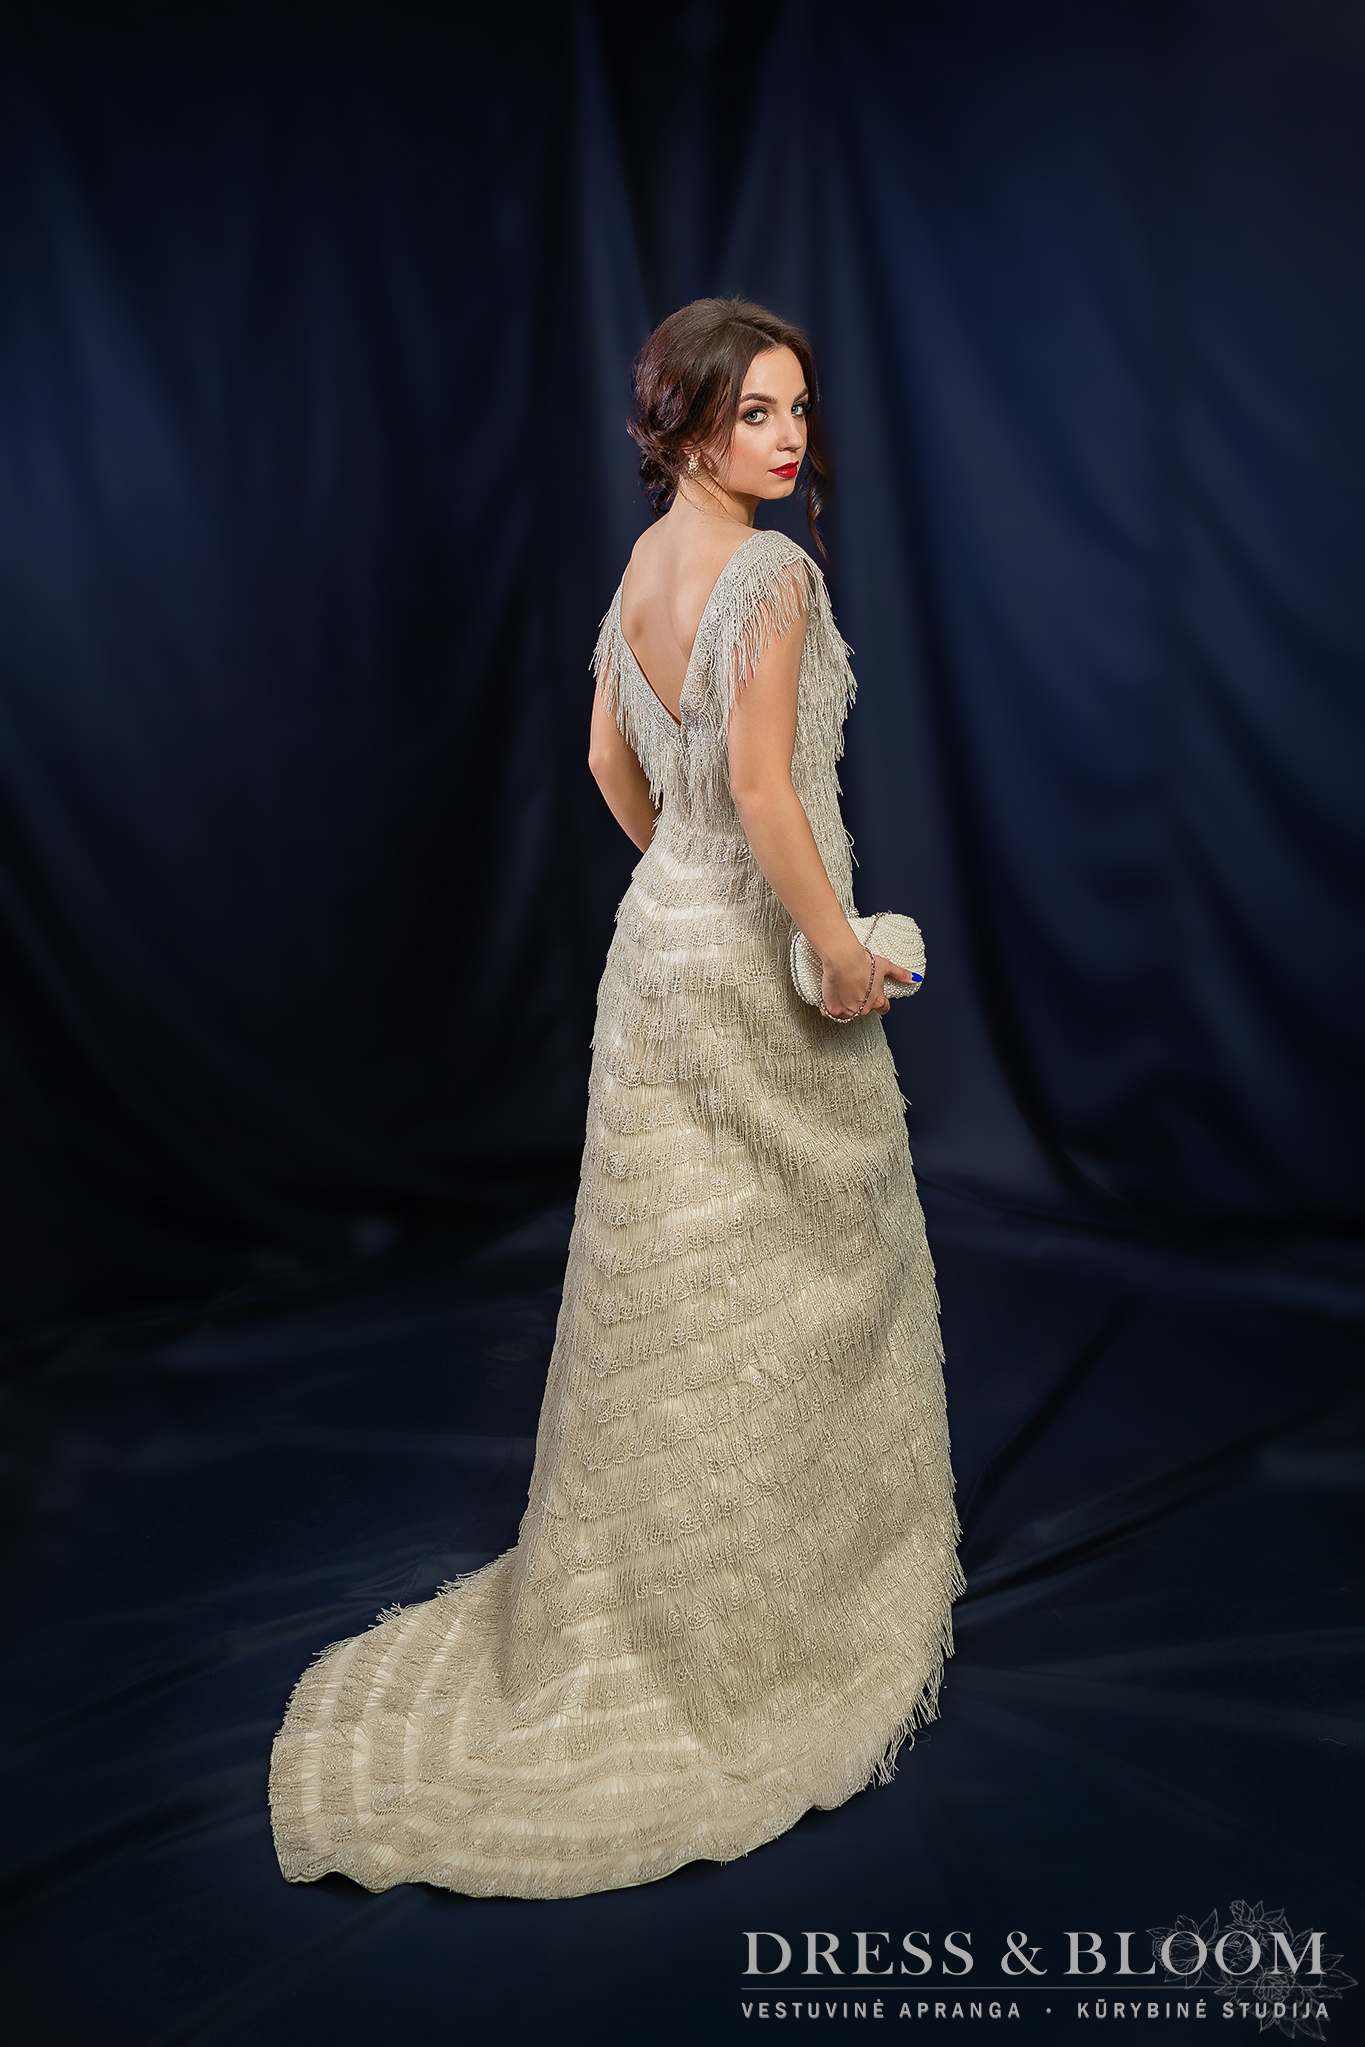 Vestuvinė-vakarinė suknelė Nr24, puošta šilko kūtosėliais su šleifu